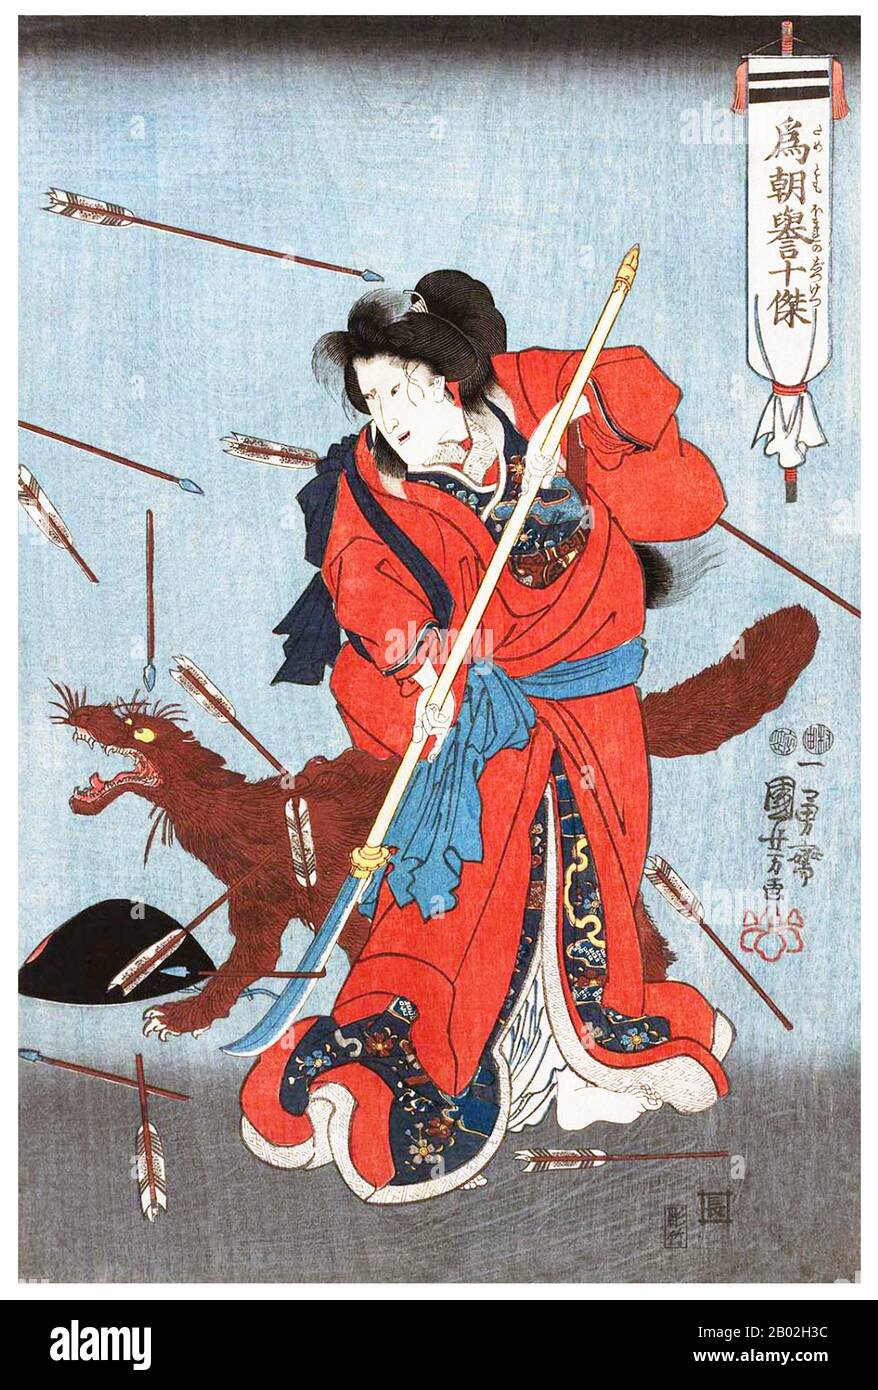 Onna-Bugeisha o samurai femminile, ha formato una piccola sezione della classe superiore tradizionale giapponese. Molte mogli, vedove, figlie e ribelli hanno risposto alla chiamata del dovere impegnandosi in battaglia, comunemente accanto agli uomini samurai. Erano membri della classe bushi (samurai) in Giappone feudale e furono formati nell'uso di armi per proteggere la loro famiglia, famiglia e onore in tempi di guerra. Essi rappresentavano anche una divergenza dal tradizionale ruolo di 'casalinga' della donna giapponese. Composto dalla parola femminile onna (donna) e dalla maschile bugeisha (guerriero), il termine crea un misnomer, che ca Foto Stock